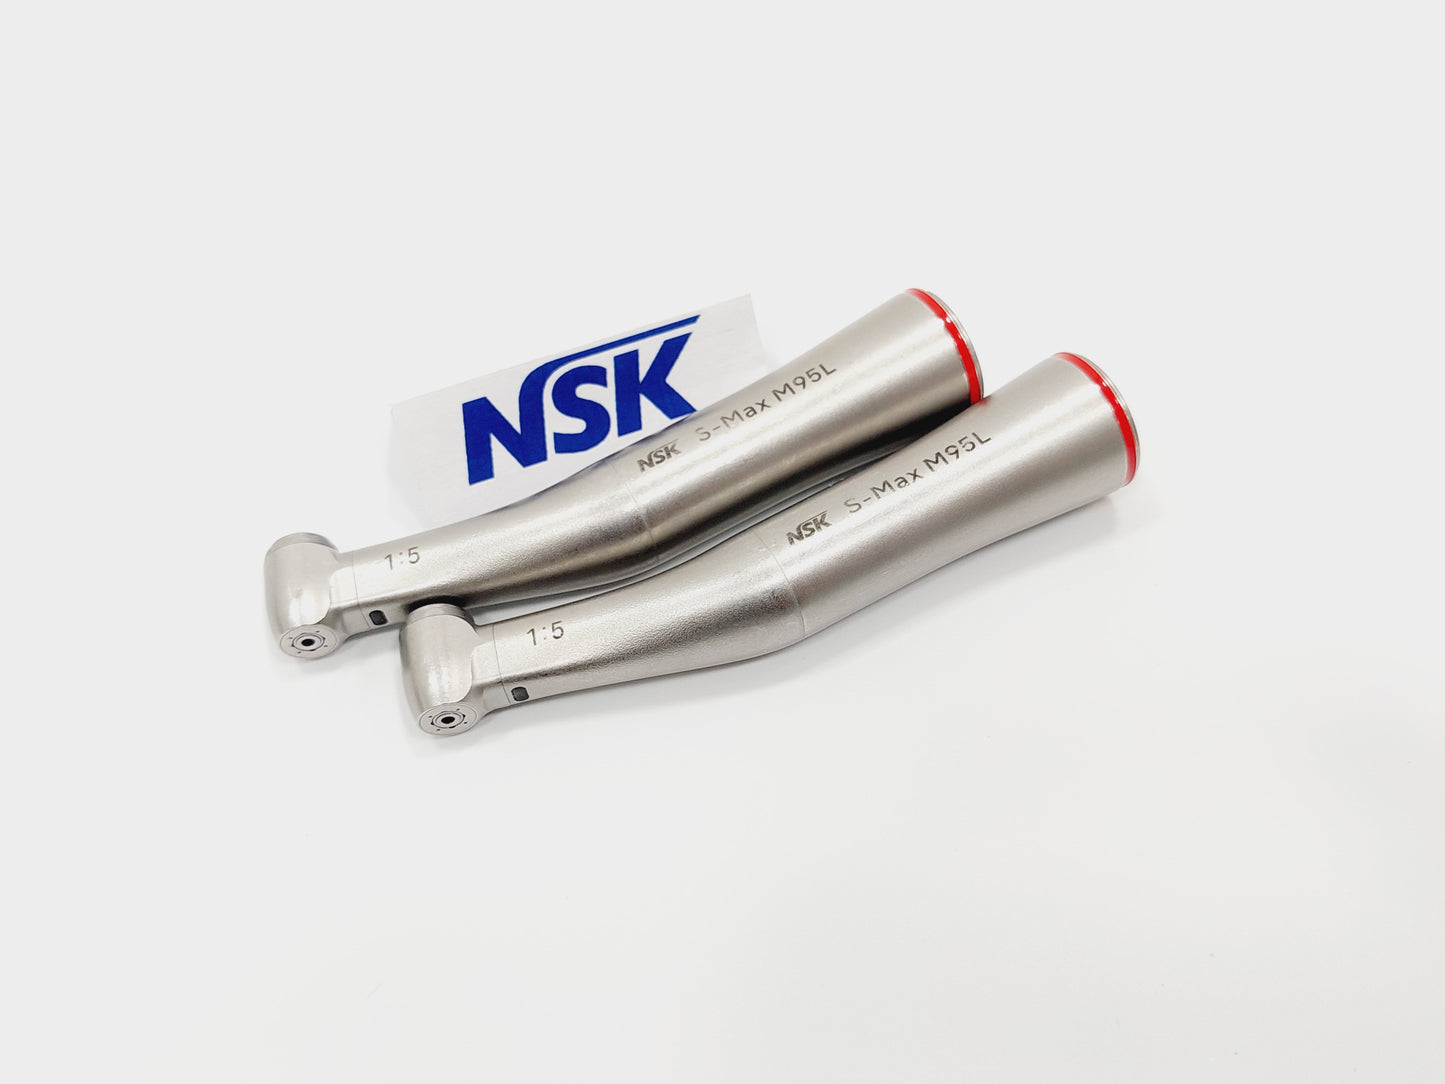 NSK Ti-Max M95L M 95 L Winkelstück 1:5 Rot mit Licht